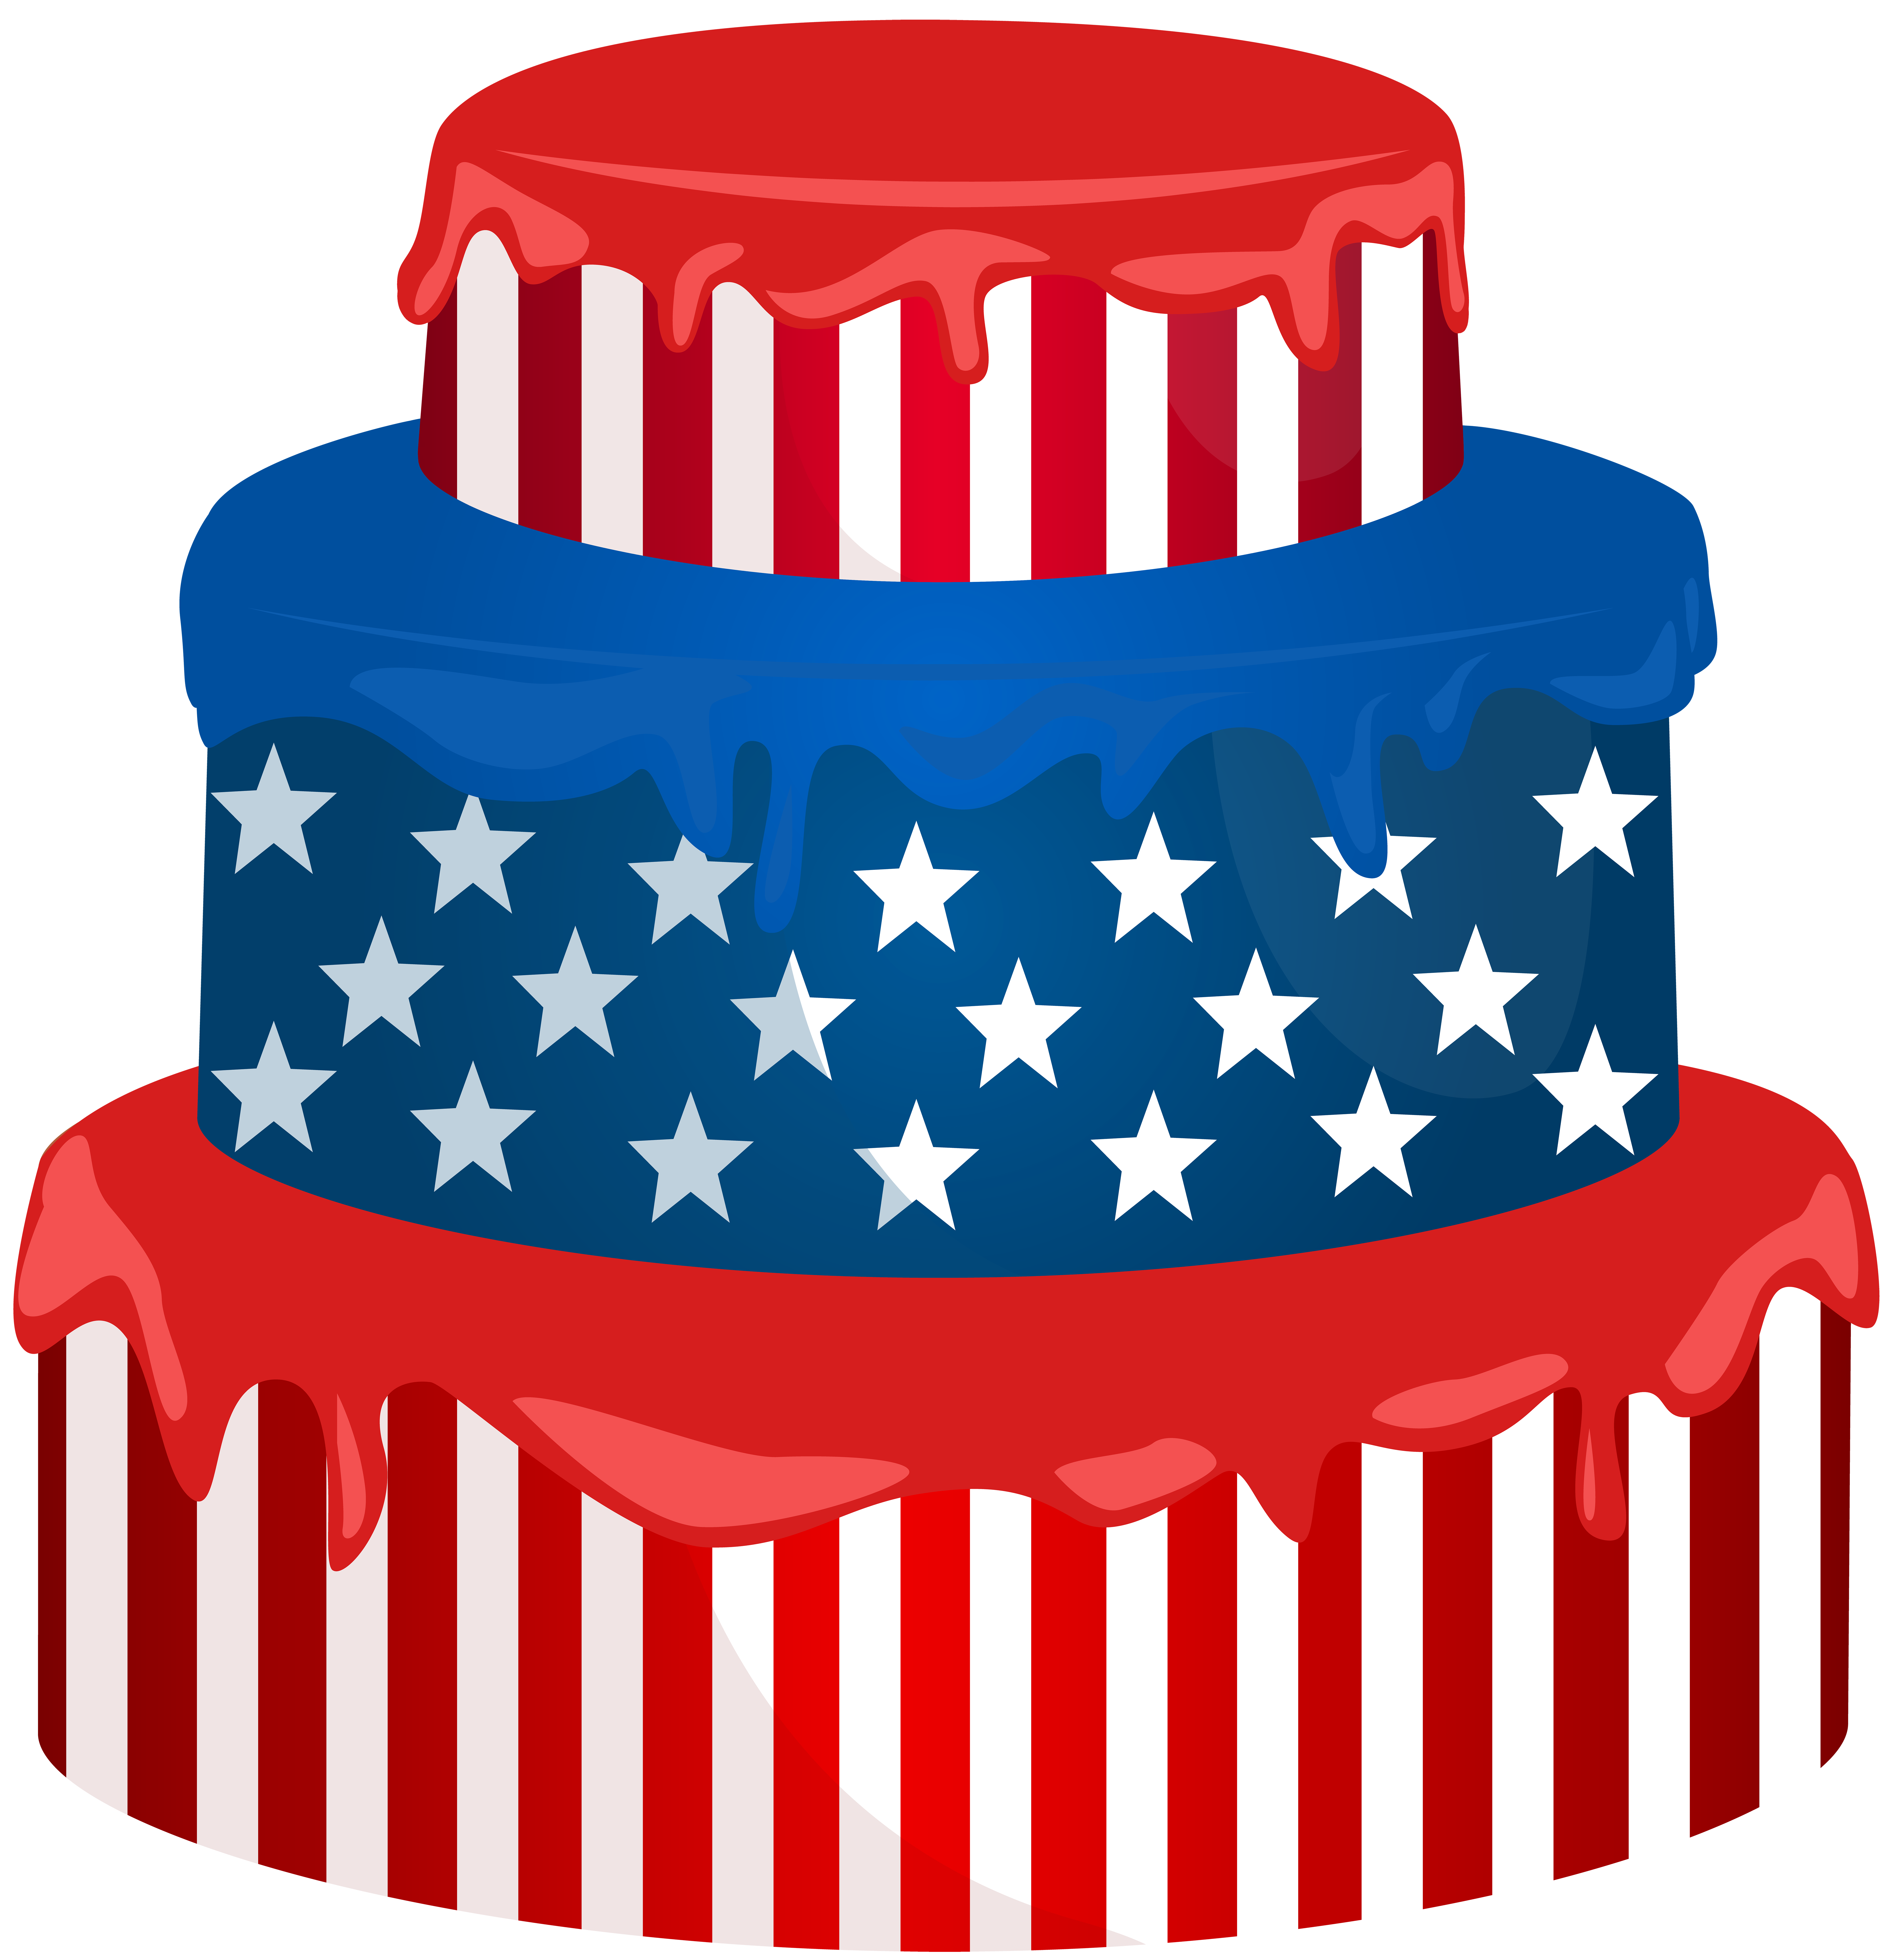 British and American flag birthday cake | American flag cake, Eat cake,  Flag cake